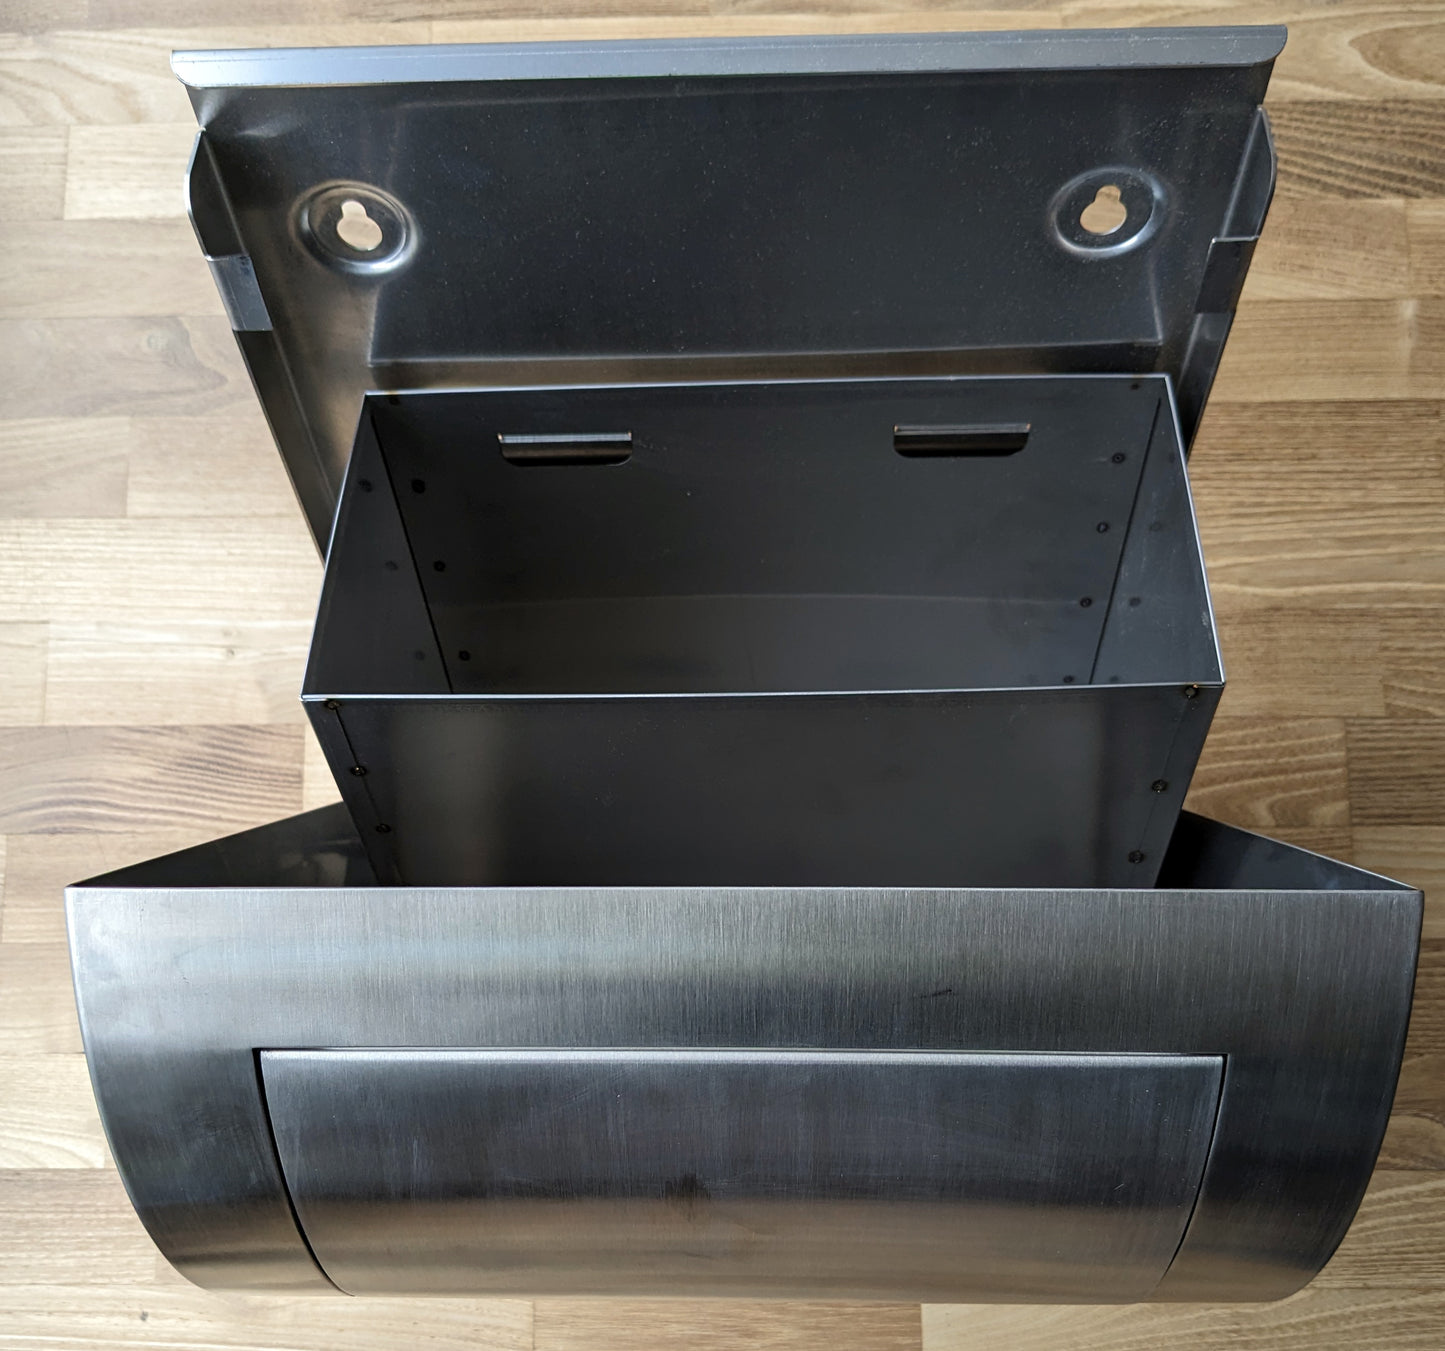 Dan Dryer Stainless Design Abfallbehälter / Hygienebox 294  (338 x 460 x160 mm) 12 l Fassungsvermögen